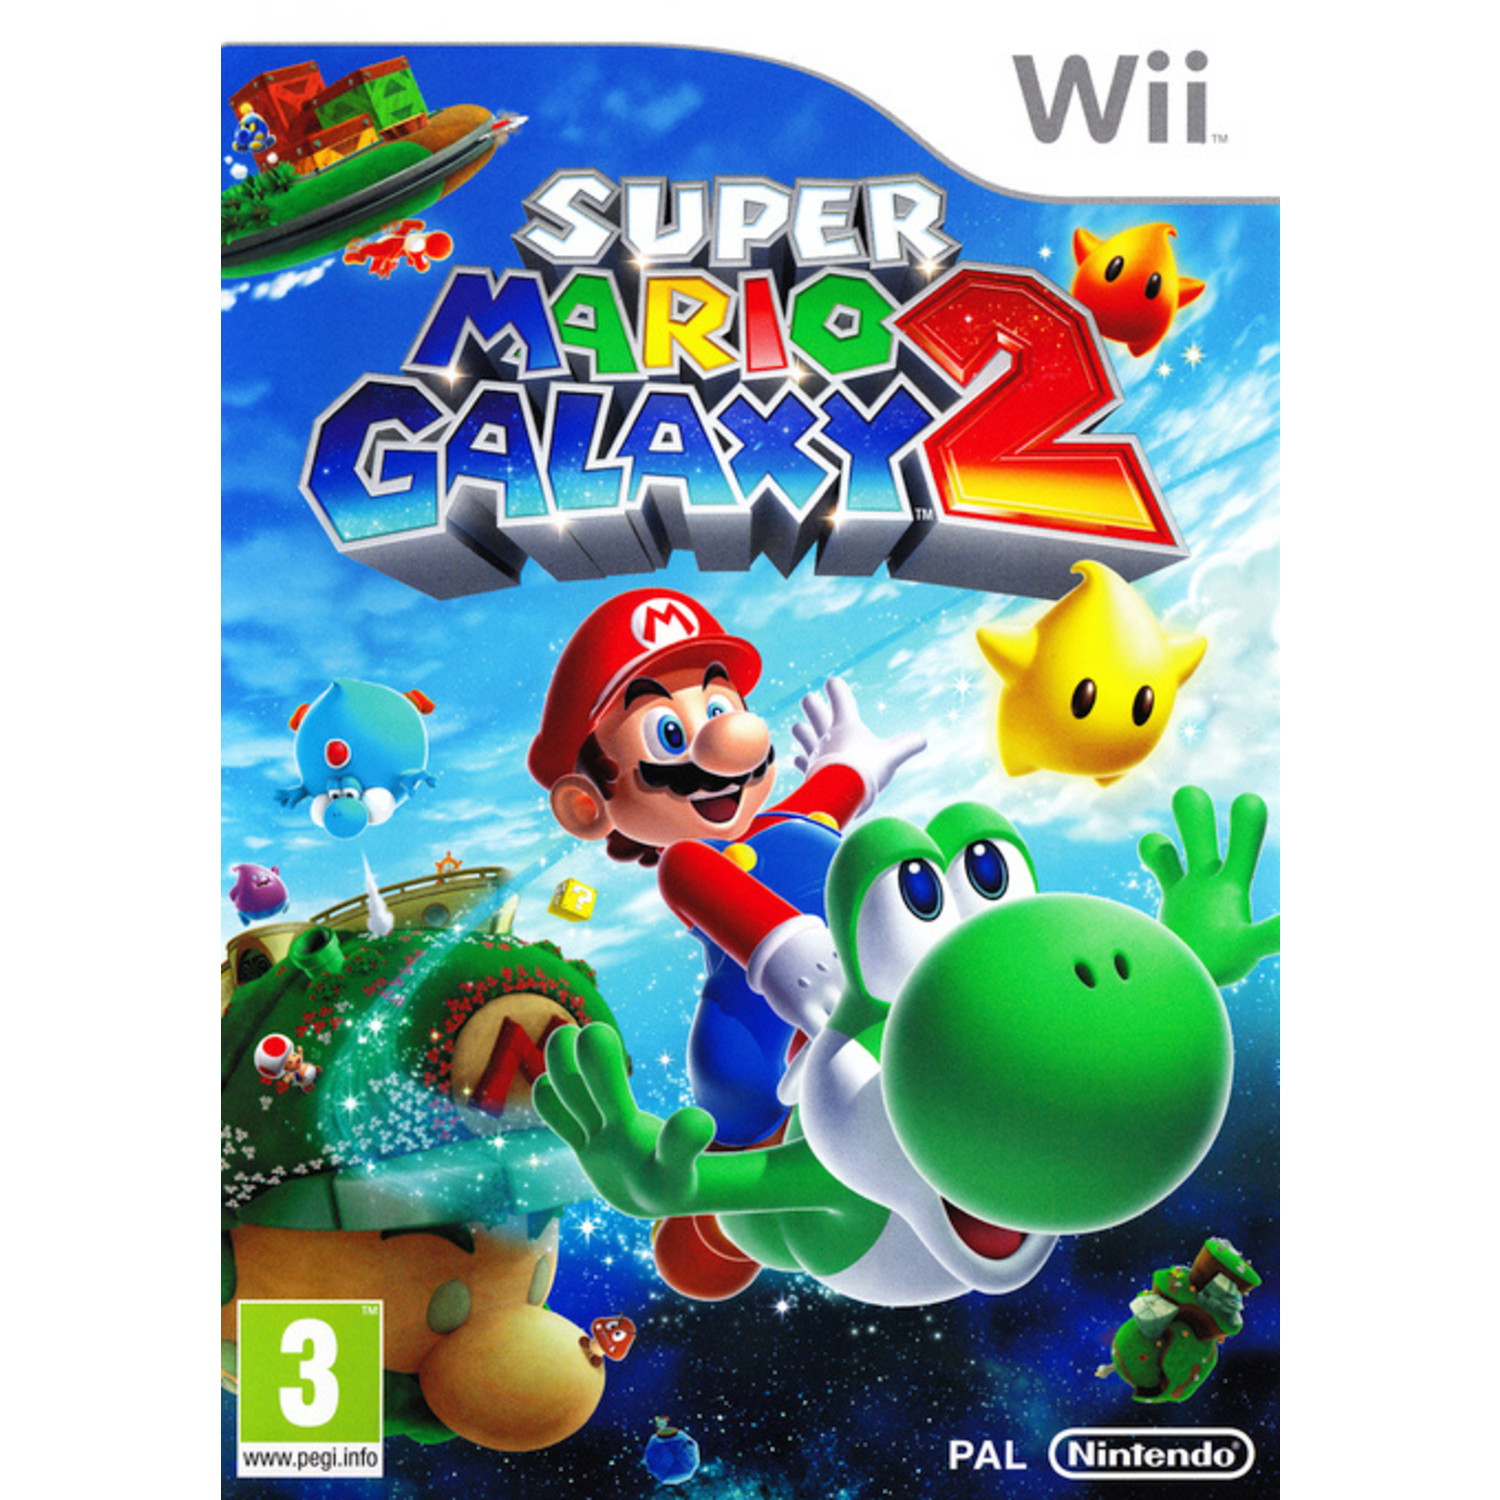 Super Mario 2 voor Nintendo Wii bij Reway met garantie - Reway.nl